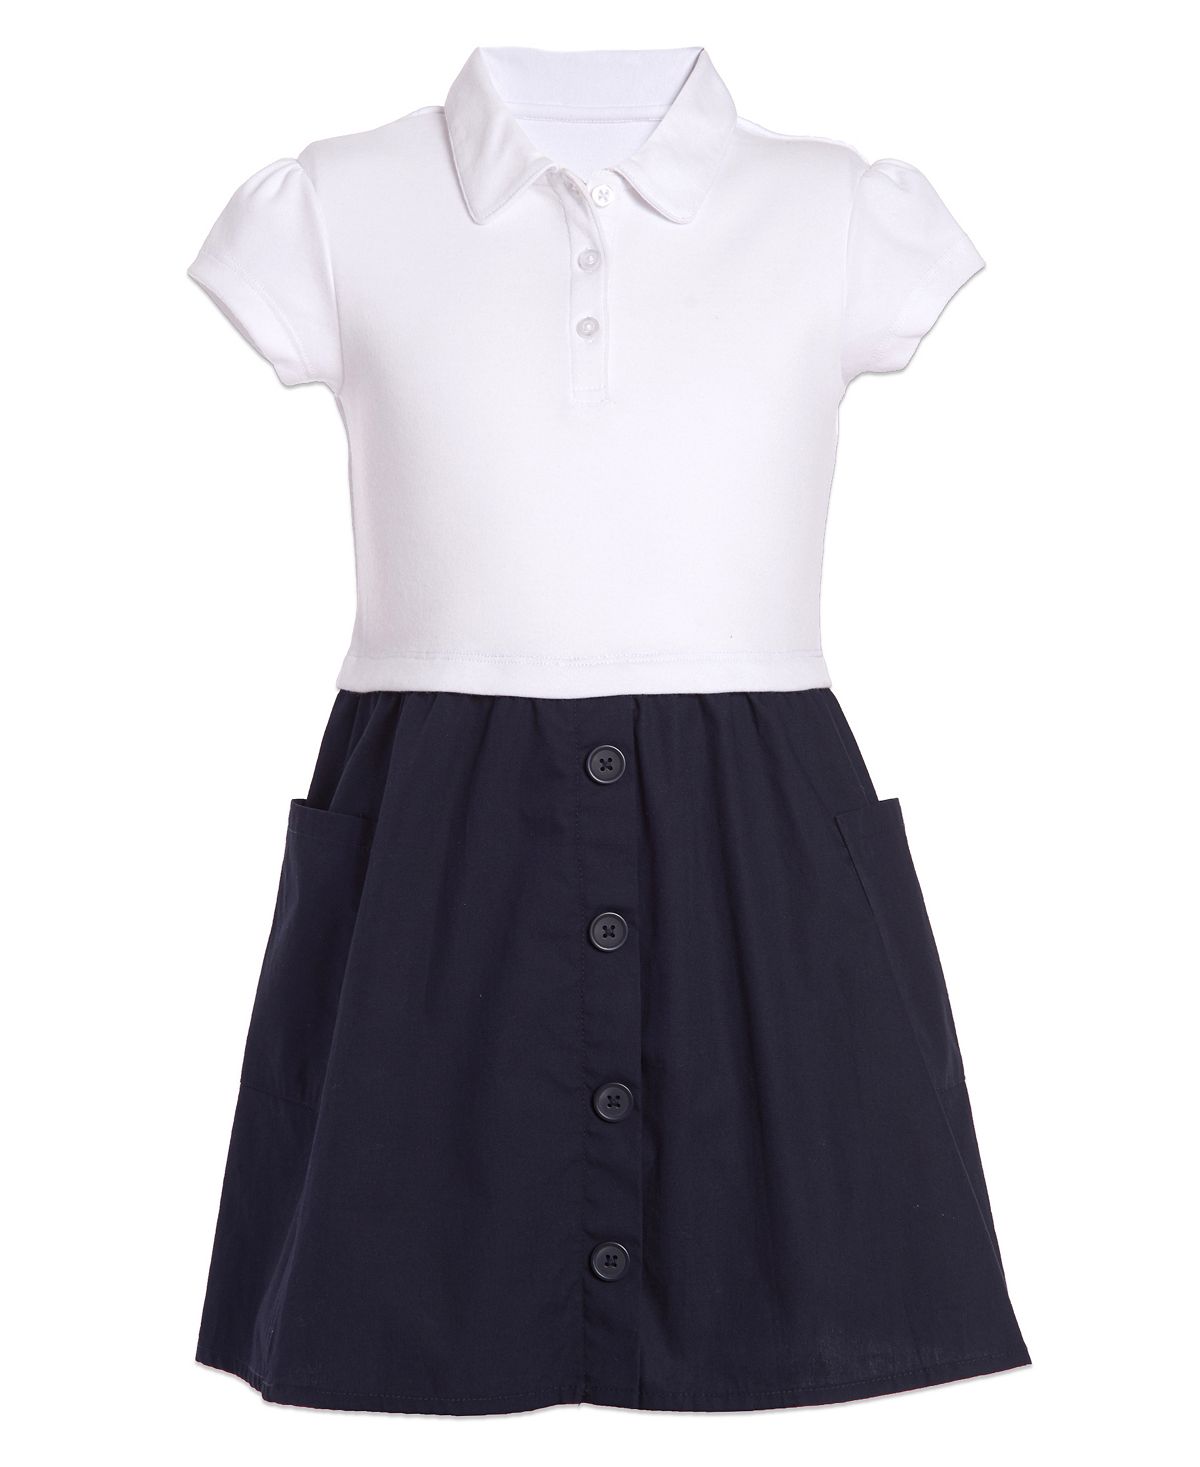 цена Униформа для маленьких девочек, двухцветное платье интерлок Nautica